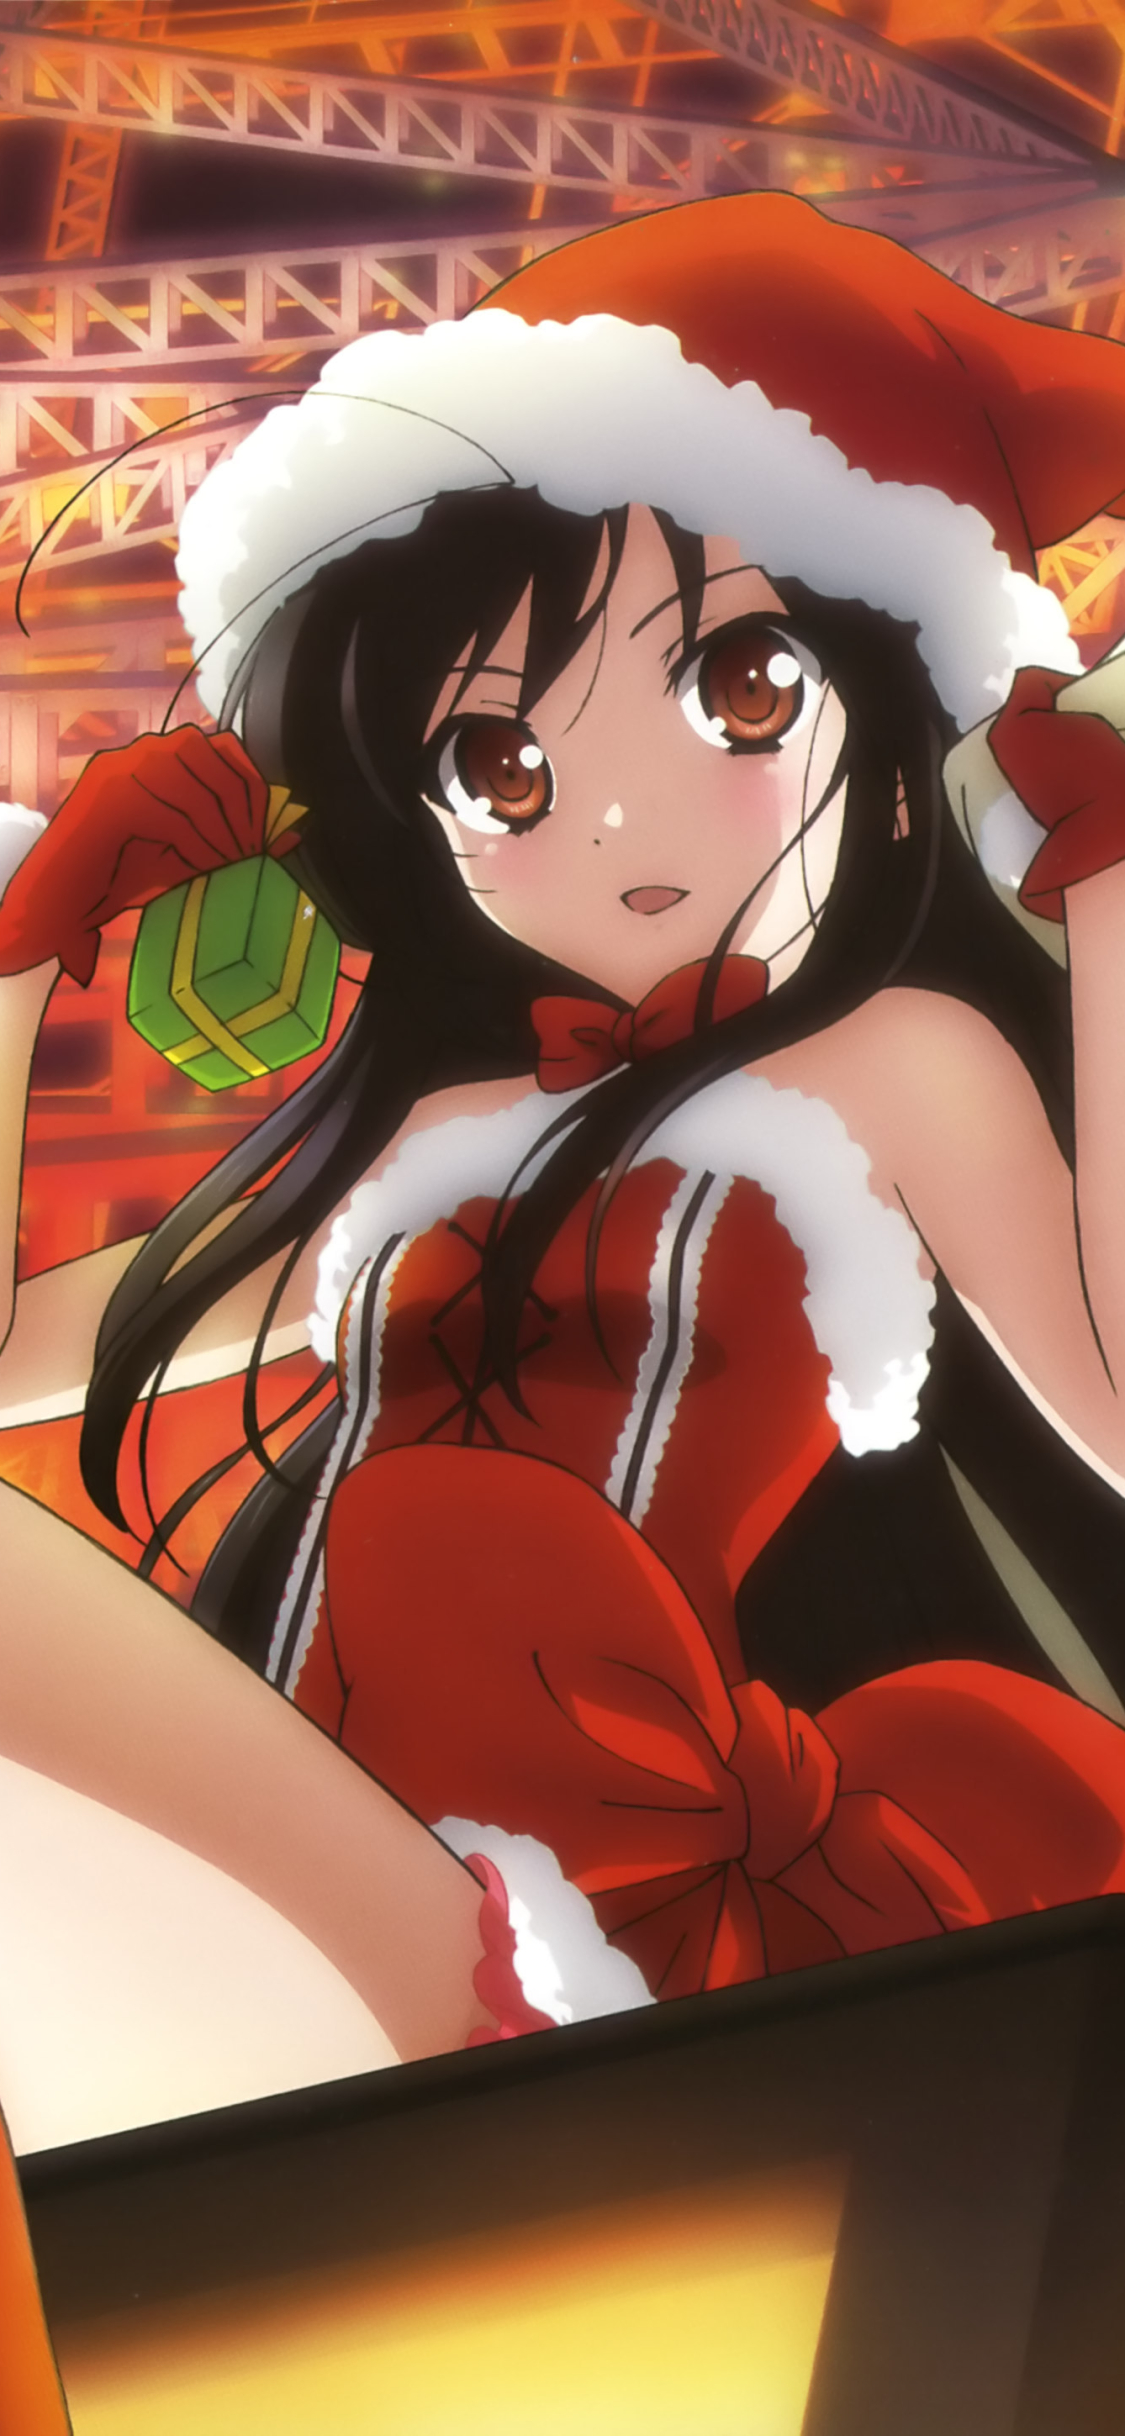 Descarga gratuita de fondo de pantalla para móvil de Navidad, Animado, Haruyuki Arita, Accel World.